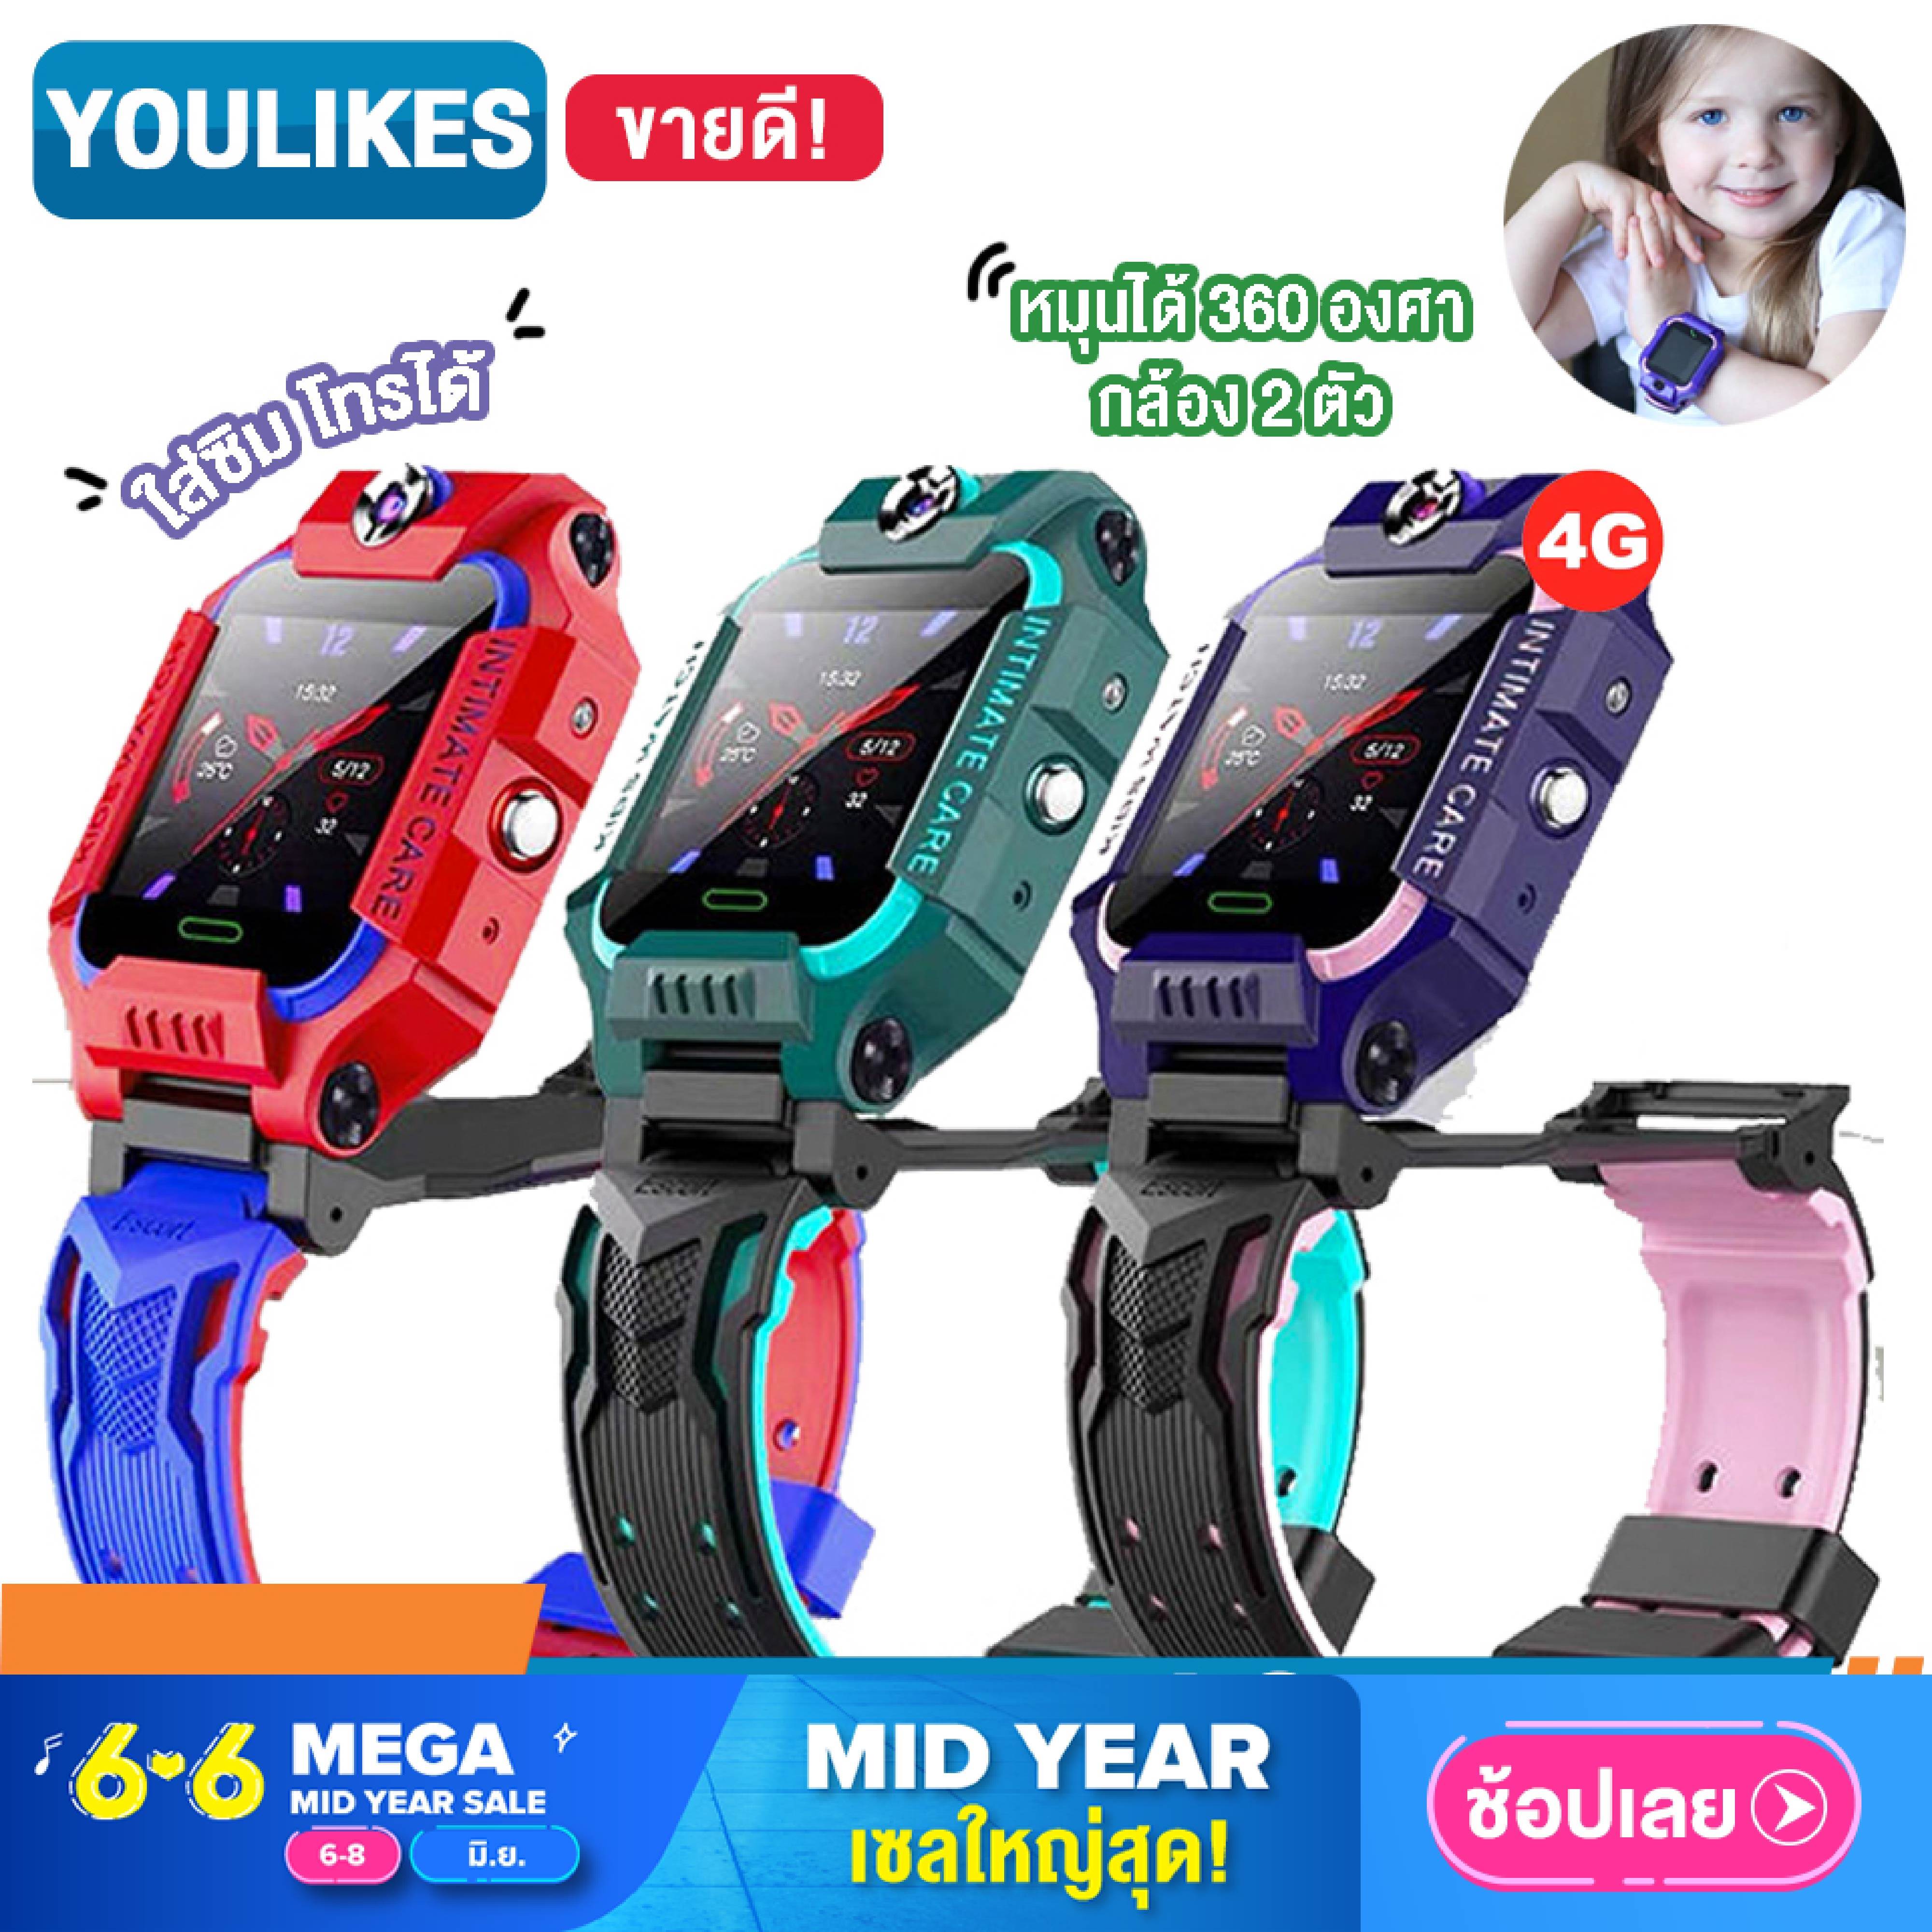 【ส่งจากประเทศไทย】smart watch Q88 ส่งจากไทย [YouLikes] Z6 สมาร์ทวอทช์ นาฬิกาไอโมเด็ก นาฬิกาโทรได้ นาฬิกาไอโม่ นาฬิกา imoo เด็ก 2G/4G ใส่ซิมได้ โทรเข้า-ออกได้ Smart Kids เมนูภาษาไทย ถ่ายรูปได้ กล้องหน้า-หลัง